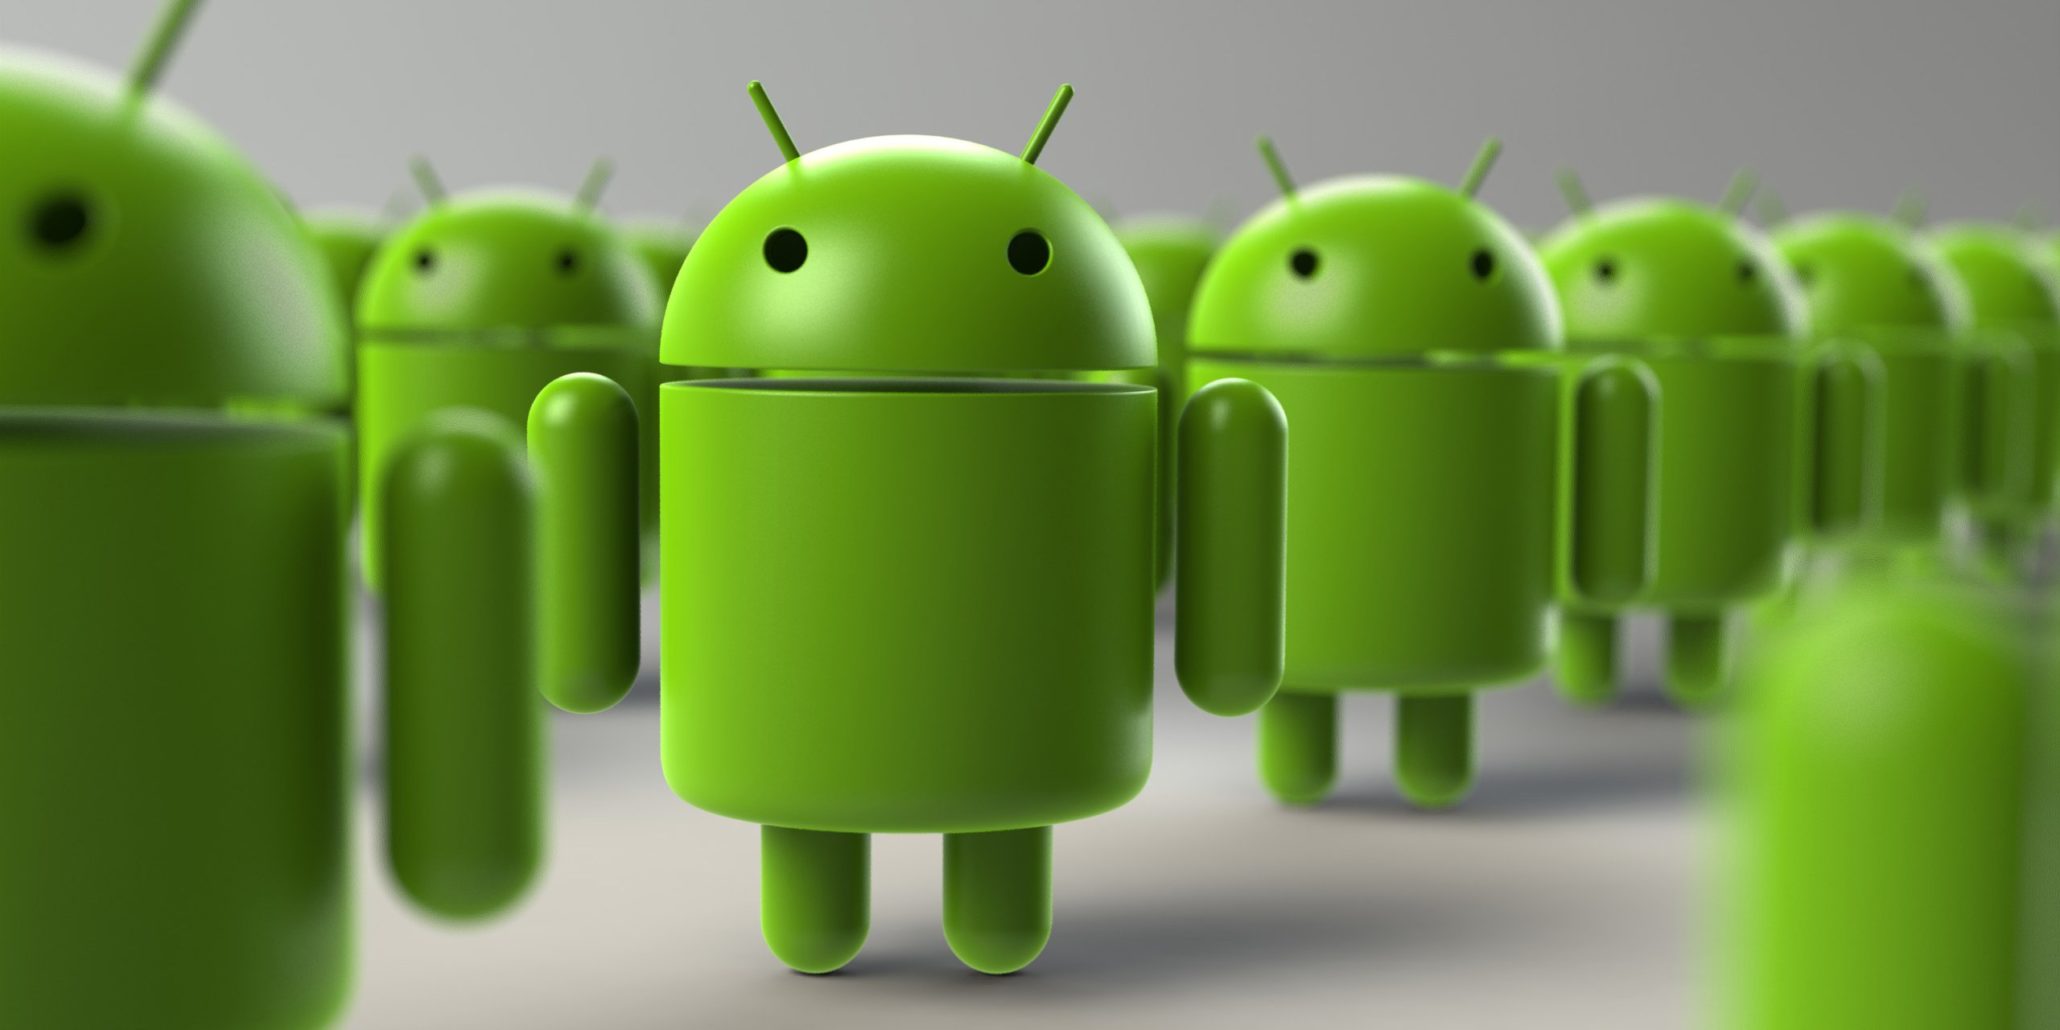 Συναγερμός: Μολύνθηκαν 25 εκατομμύρια κινητά τηλέφωνα Android από ιό